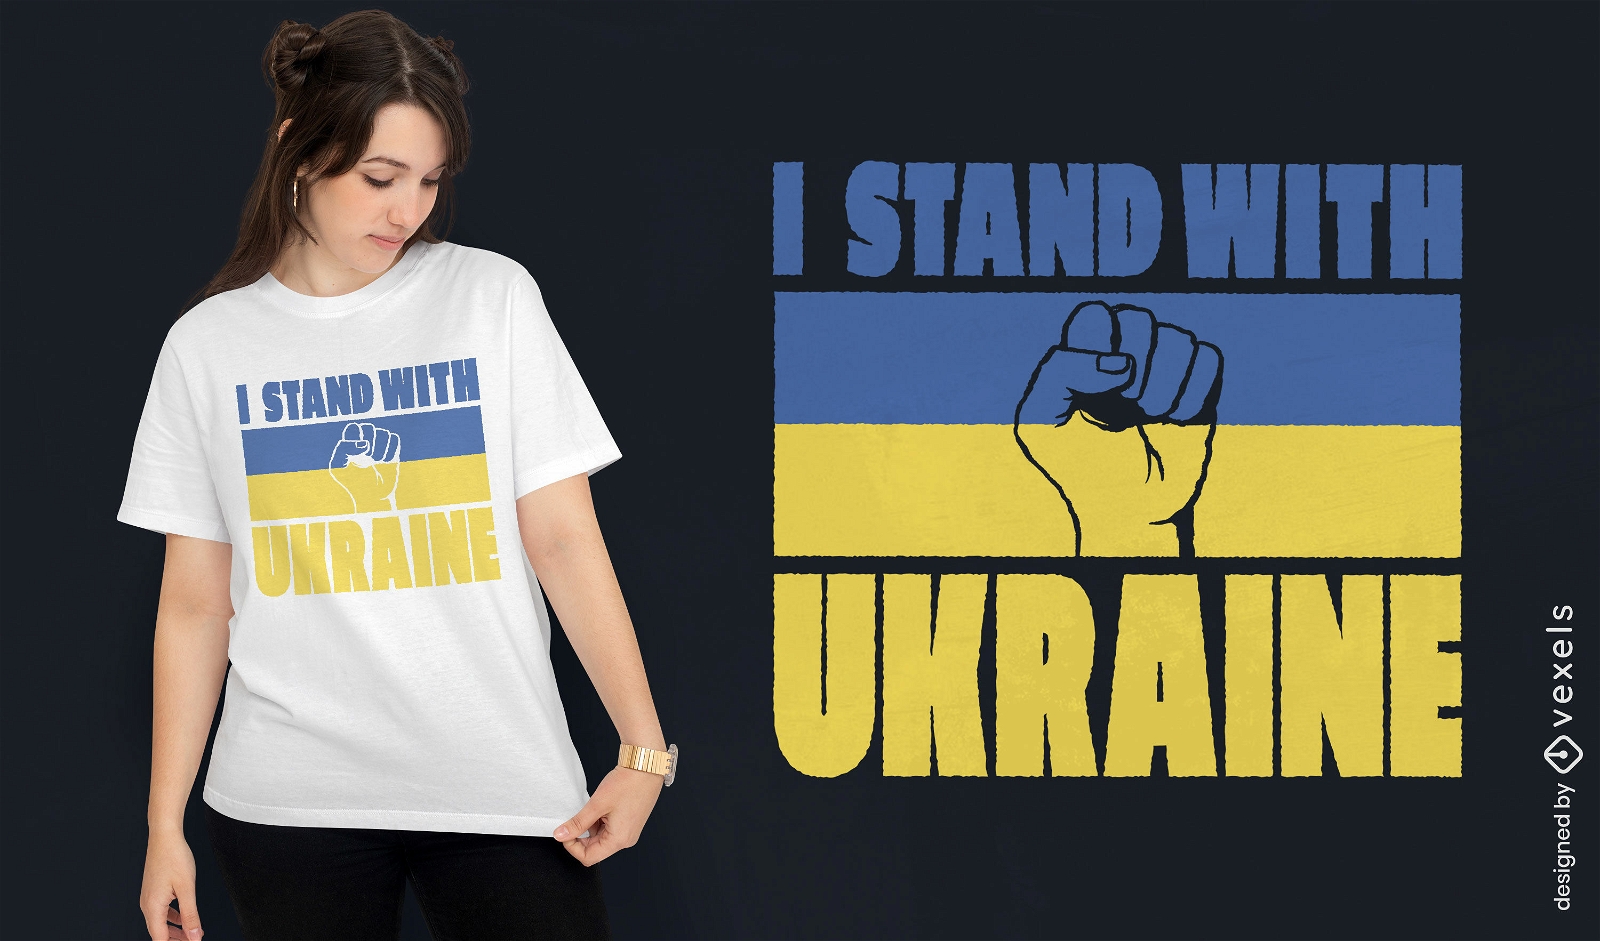 Stand com design de t-shirt da bandeira da ucr?nia